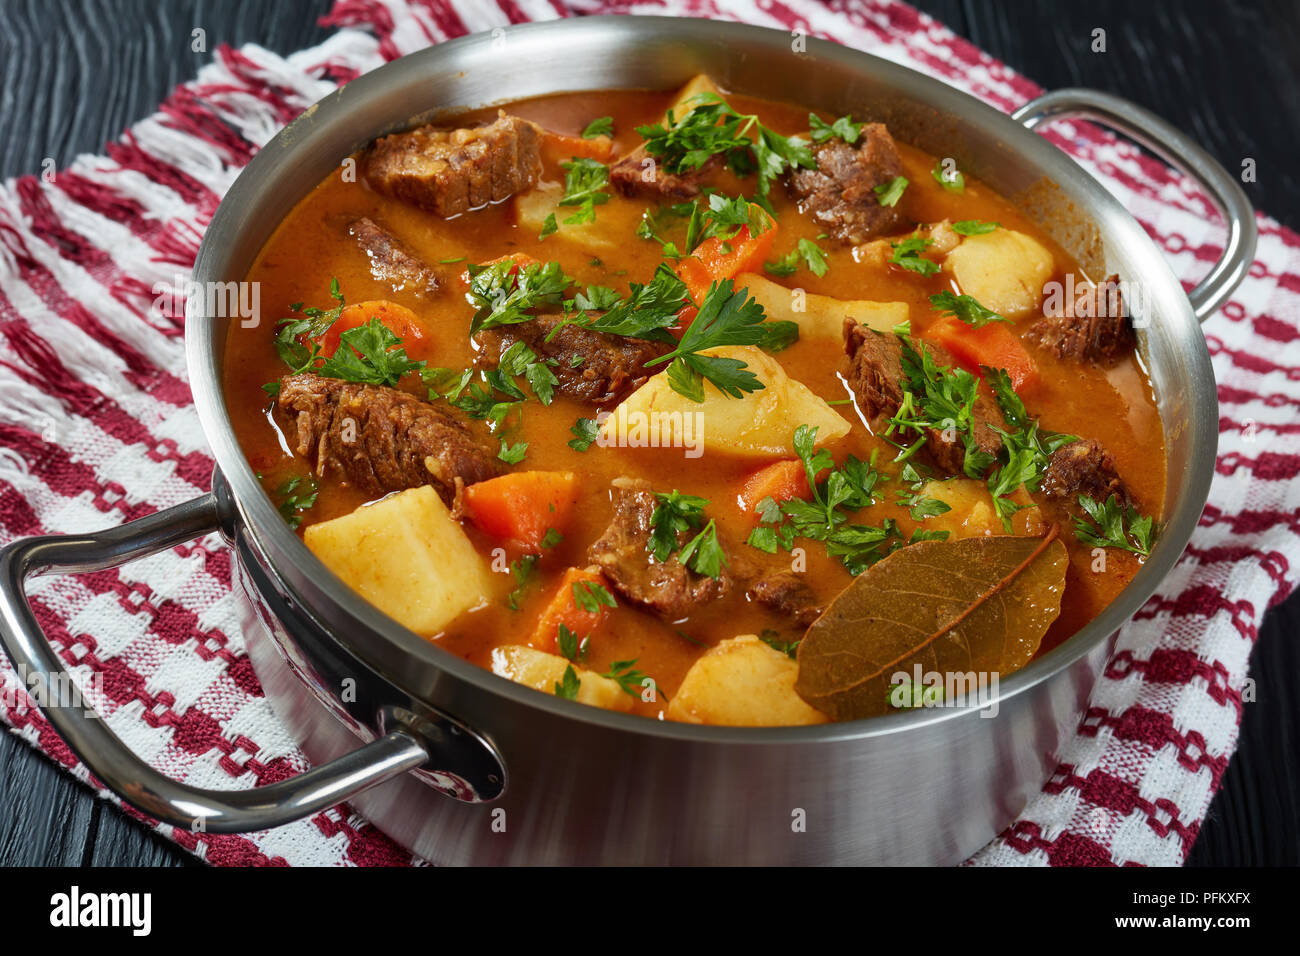 Ragoût de boeuf avec des pommes de terre et les carottes ou estofado de carne dans une casserole de métal, recette authentique, vue de dessus, close-up Banque D'Images